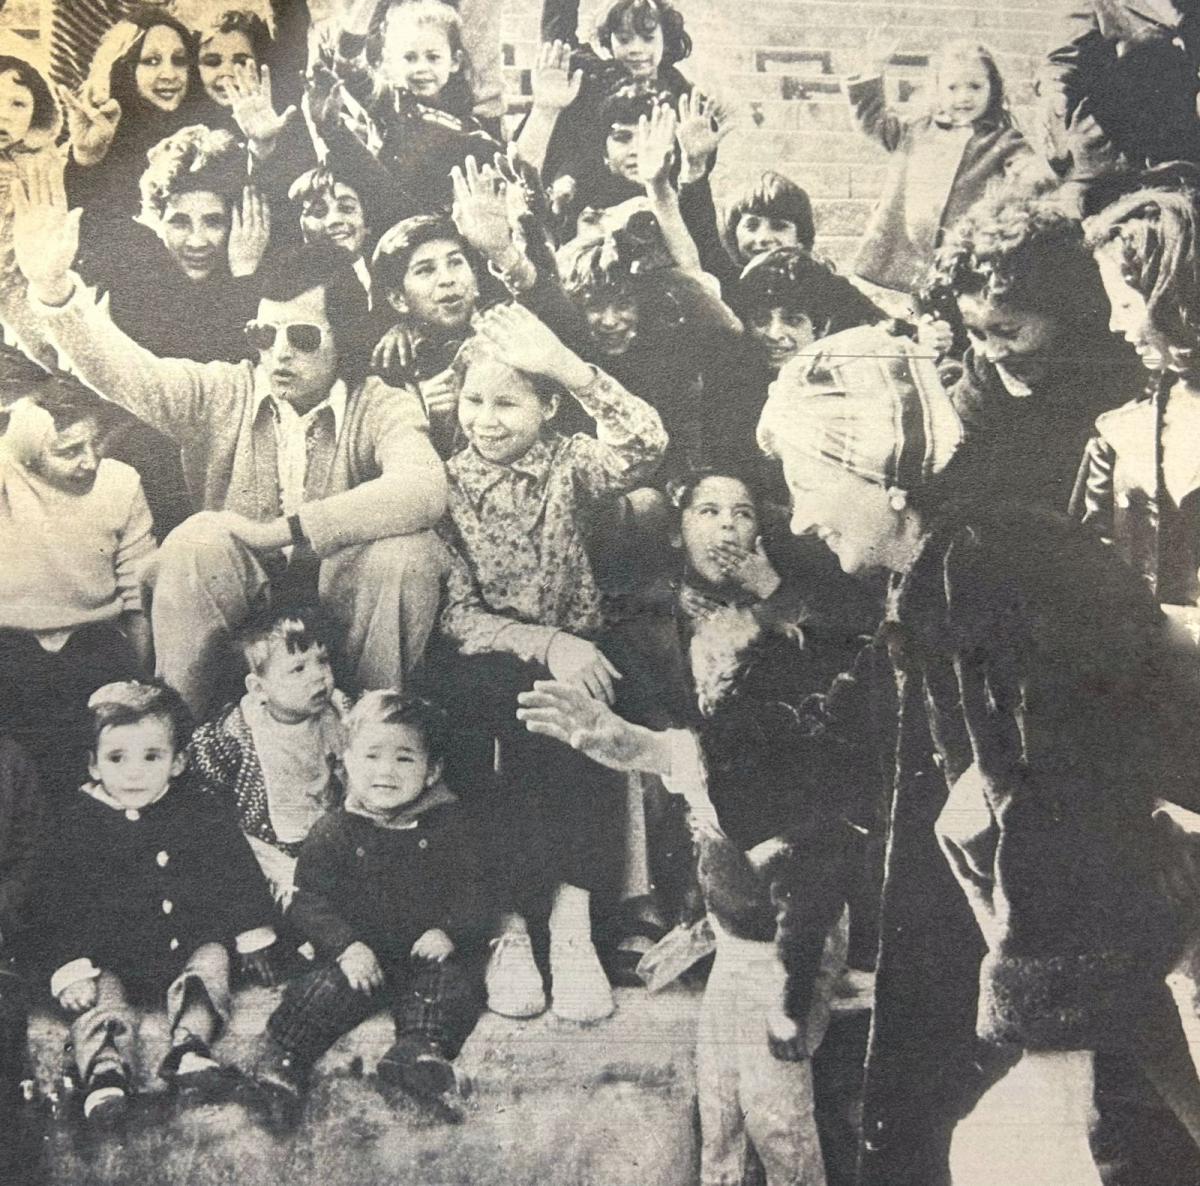 UN ÉXITO. Palito, en 1973, rodeado por un grupo de niños. Todos cantaron a coro “Yo tengo fe”, para un reportaje de la revista Gente.